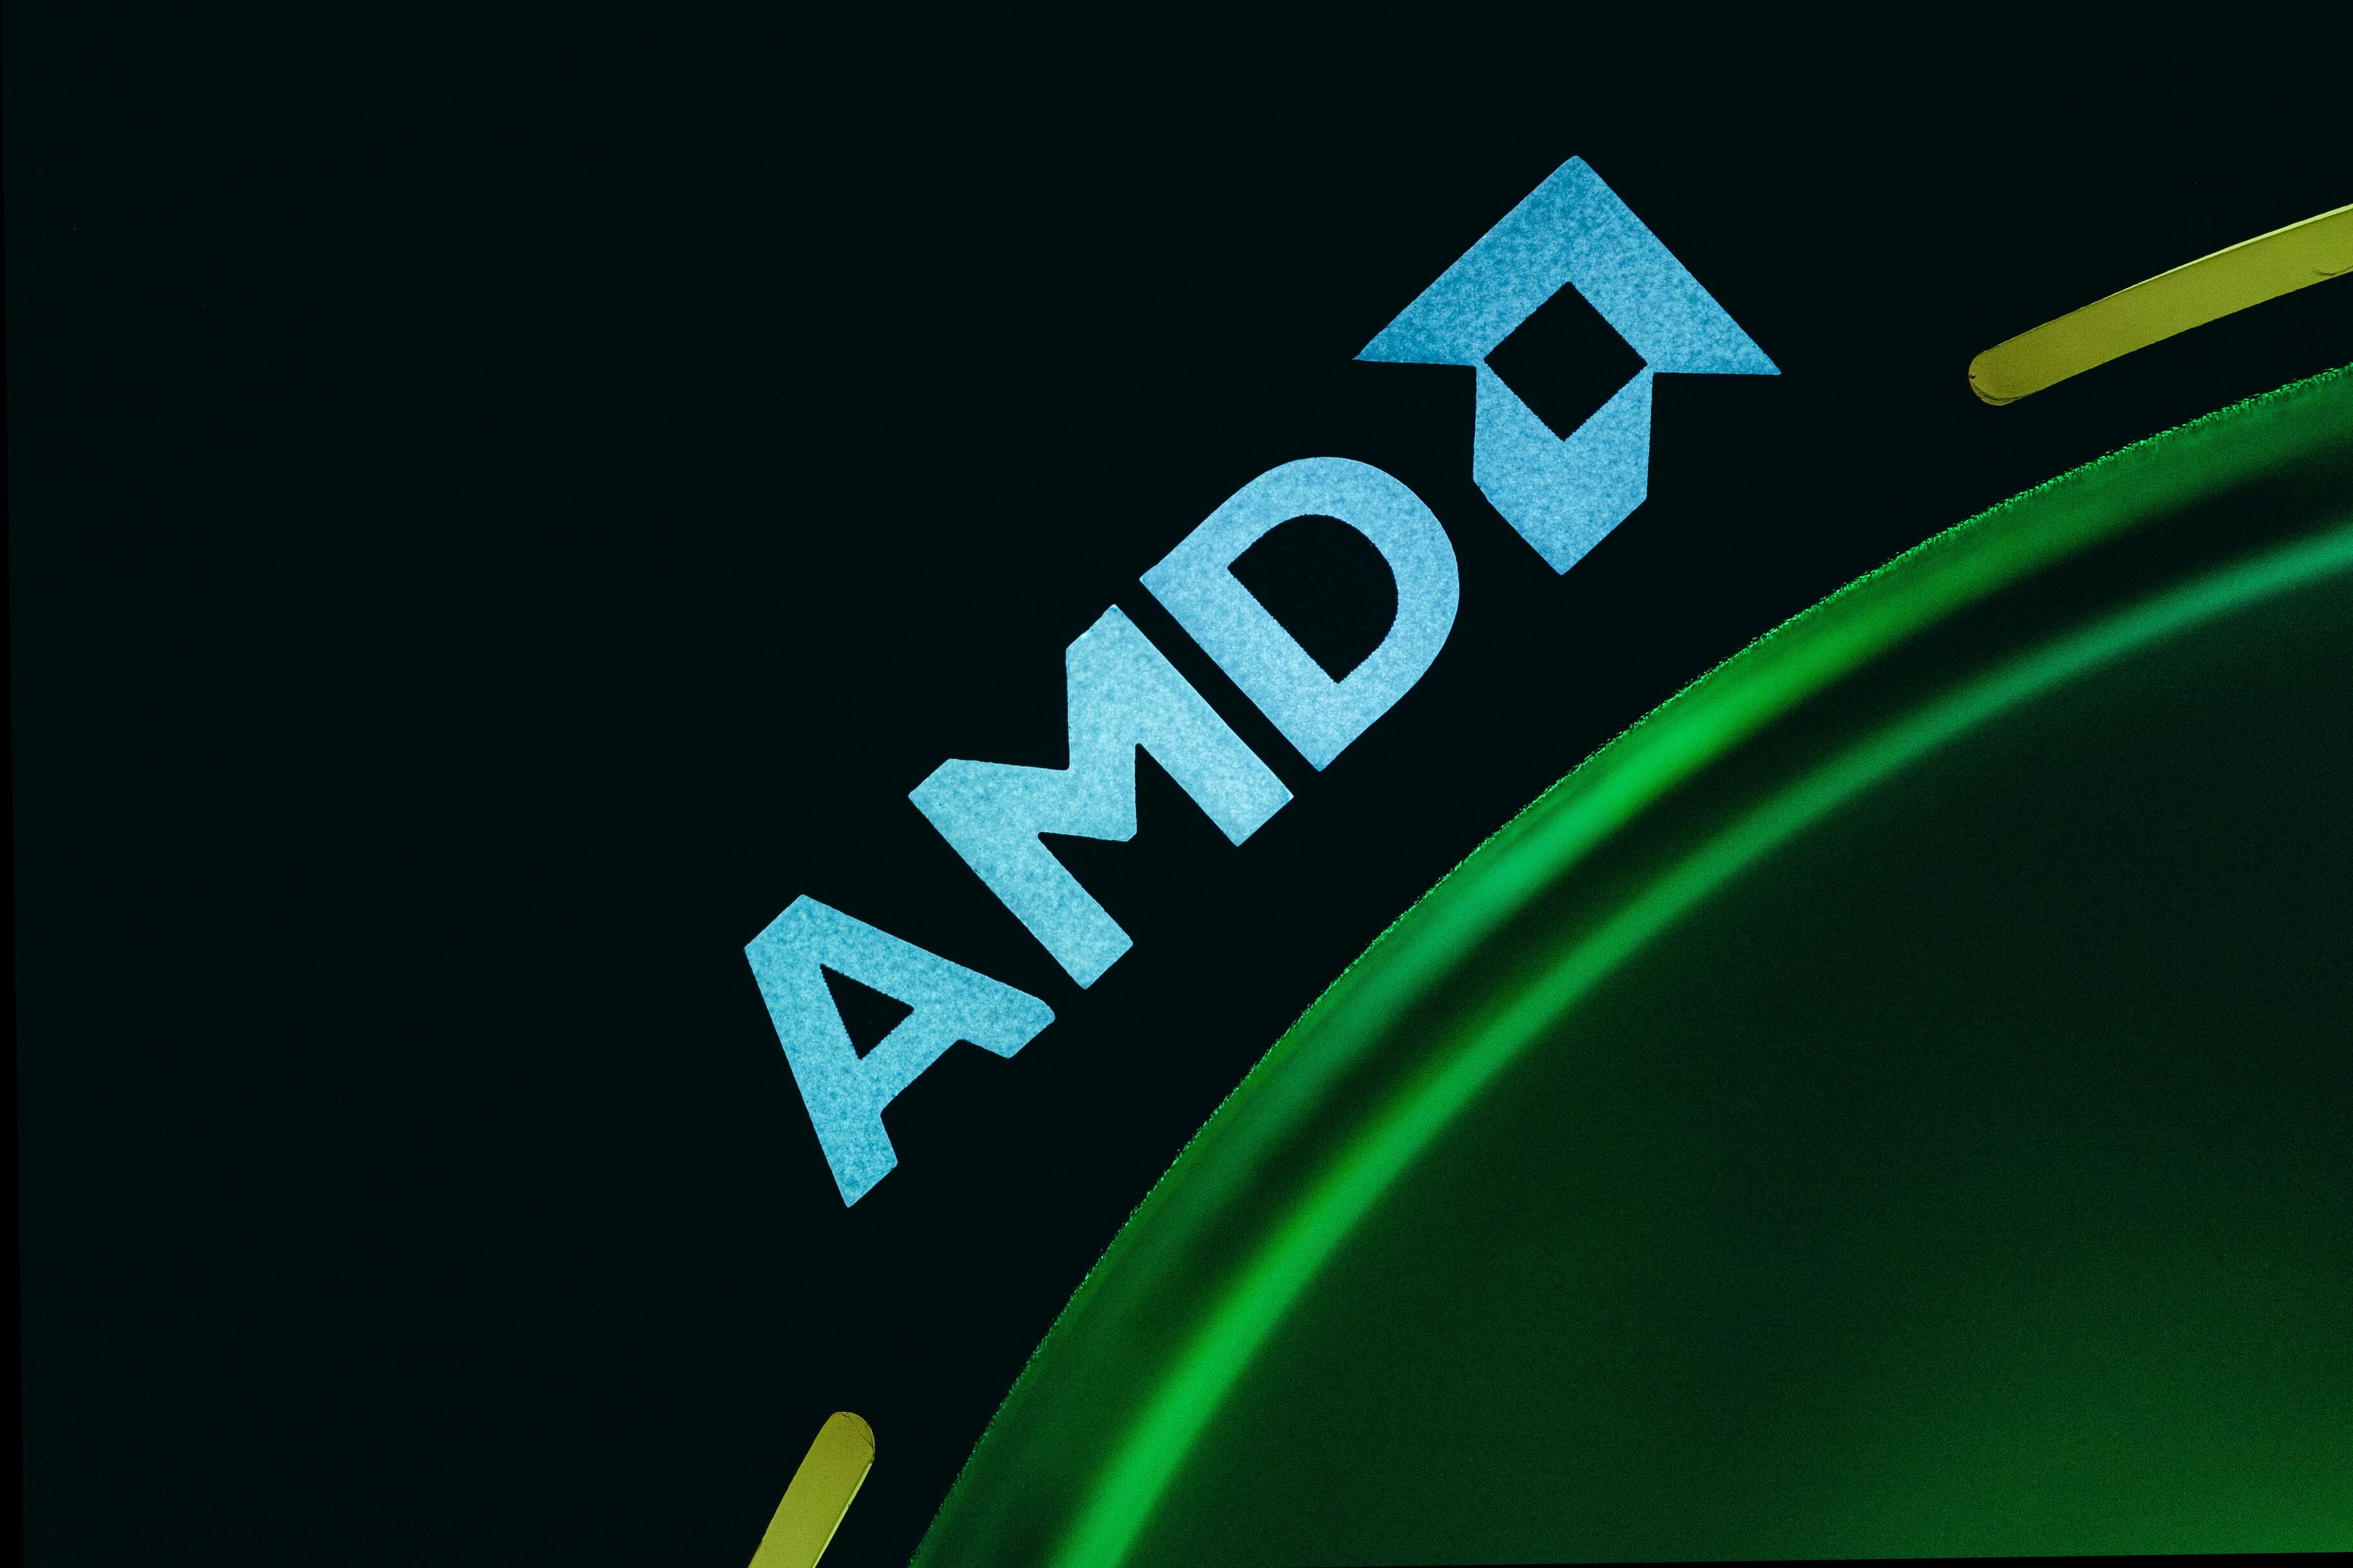 Новая видеокарта AMD Radeon Pro W7700 получит 16 ГБ памяти